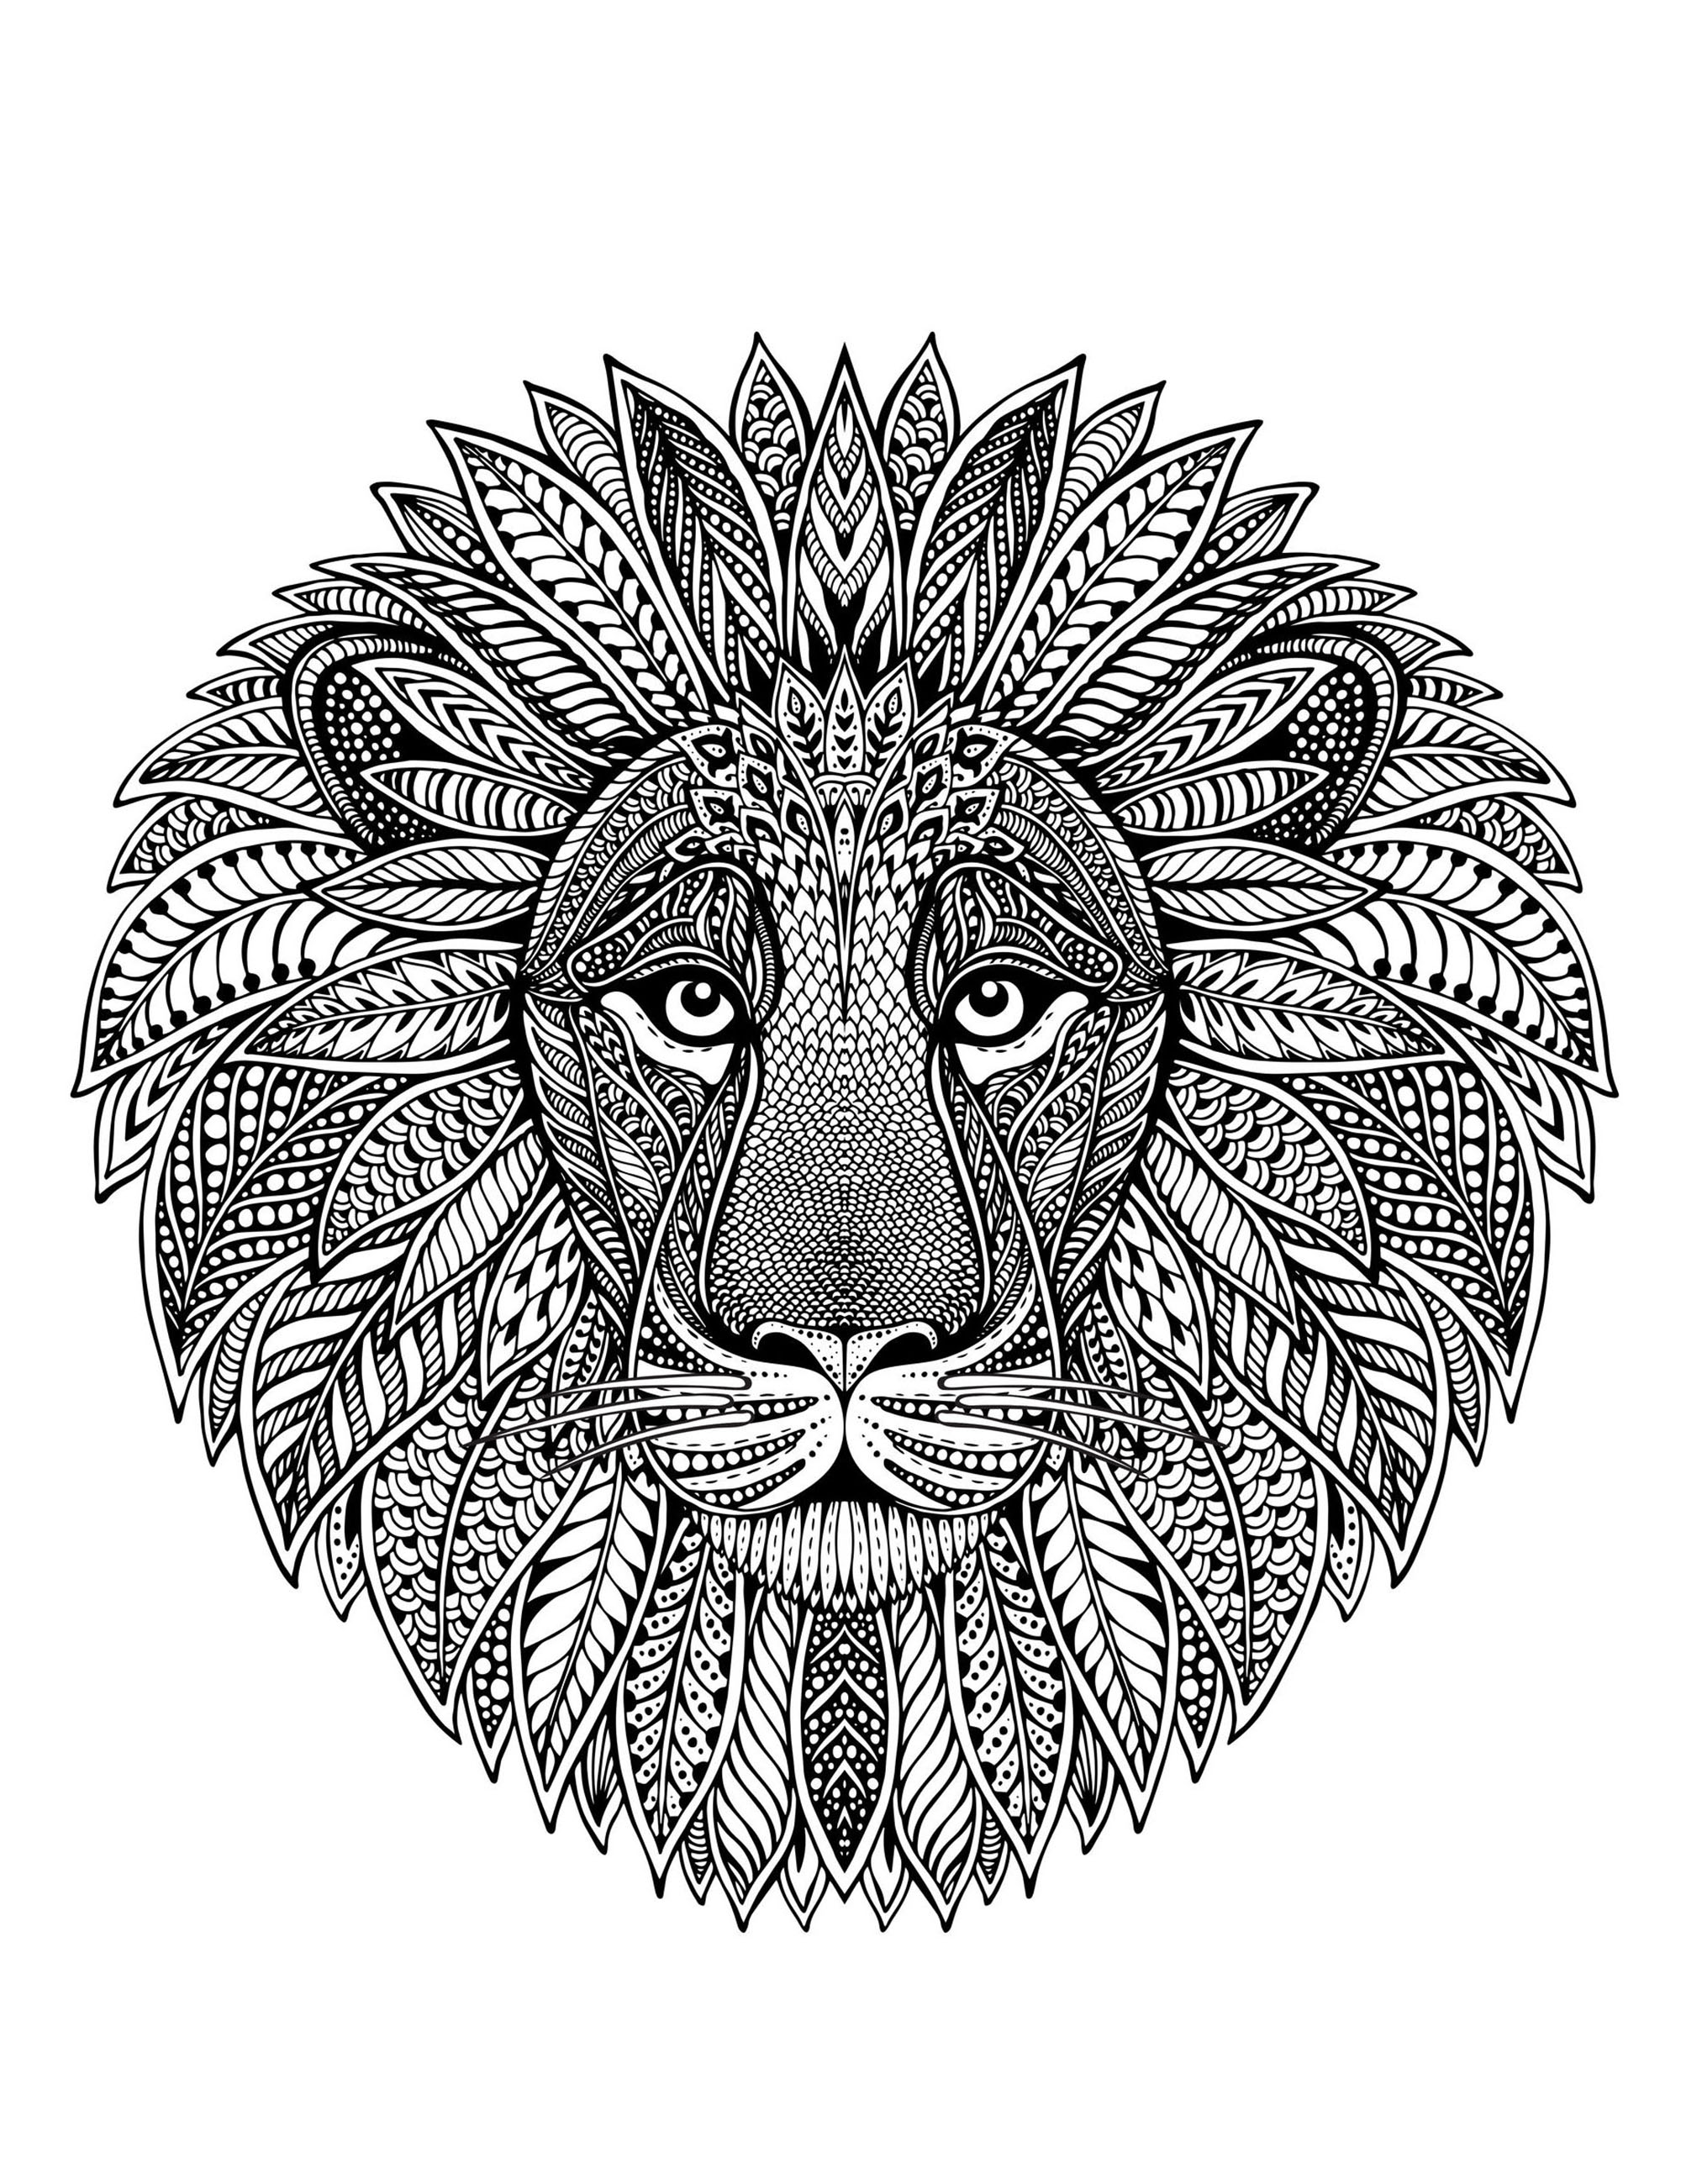 Un mandala con cabeza de león, para los que prefieren colorear con elementos concretos y vivos.